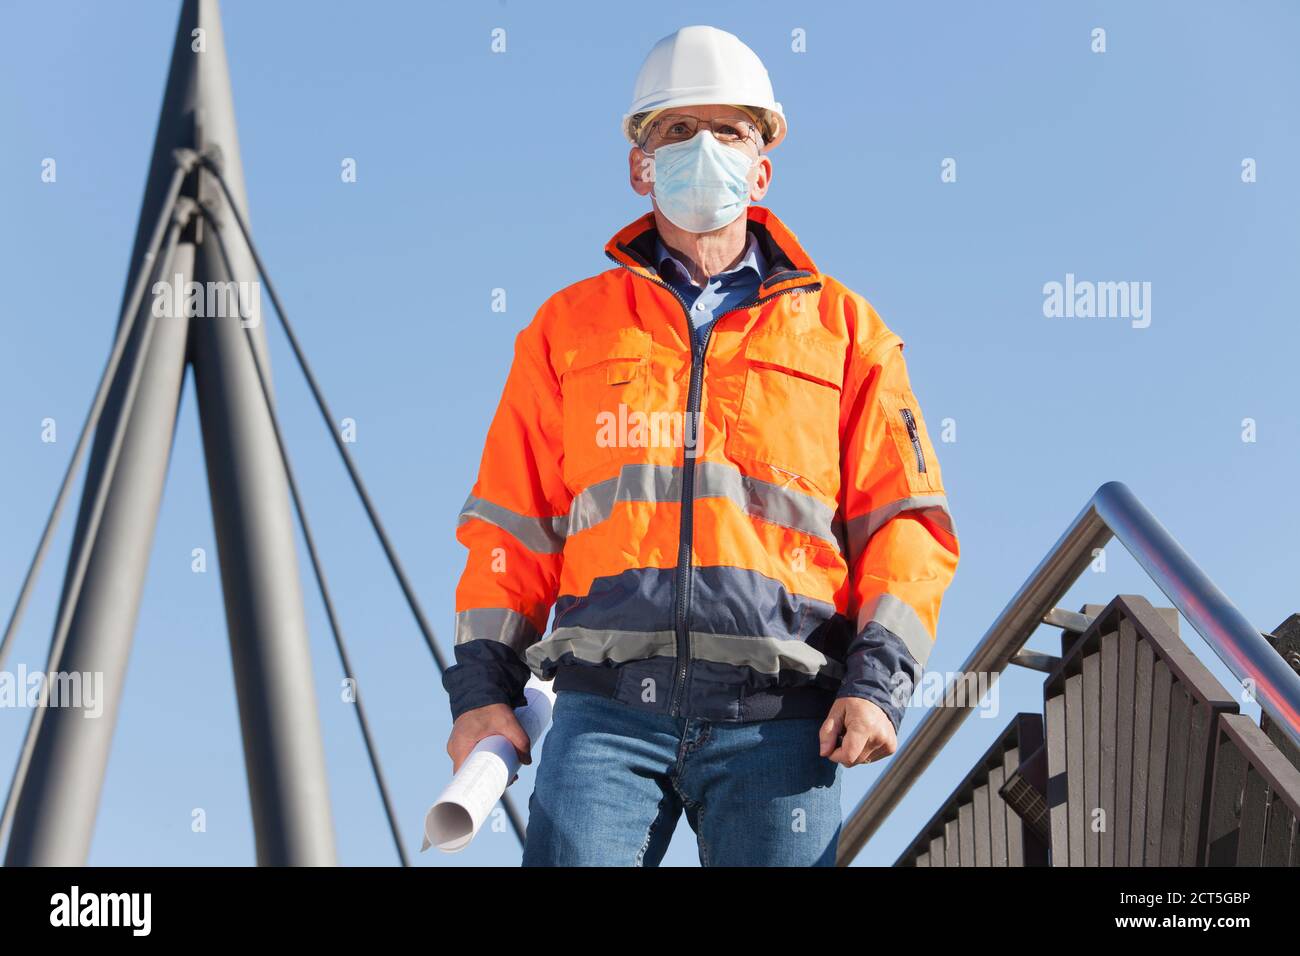 Arquitecto o ingeniero con máscara facial y ropa protectora caminando abajo - foco en la cara Foto de stock